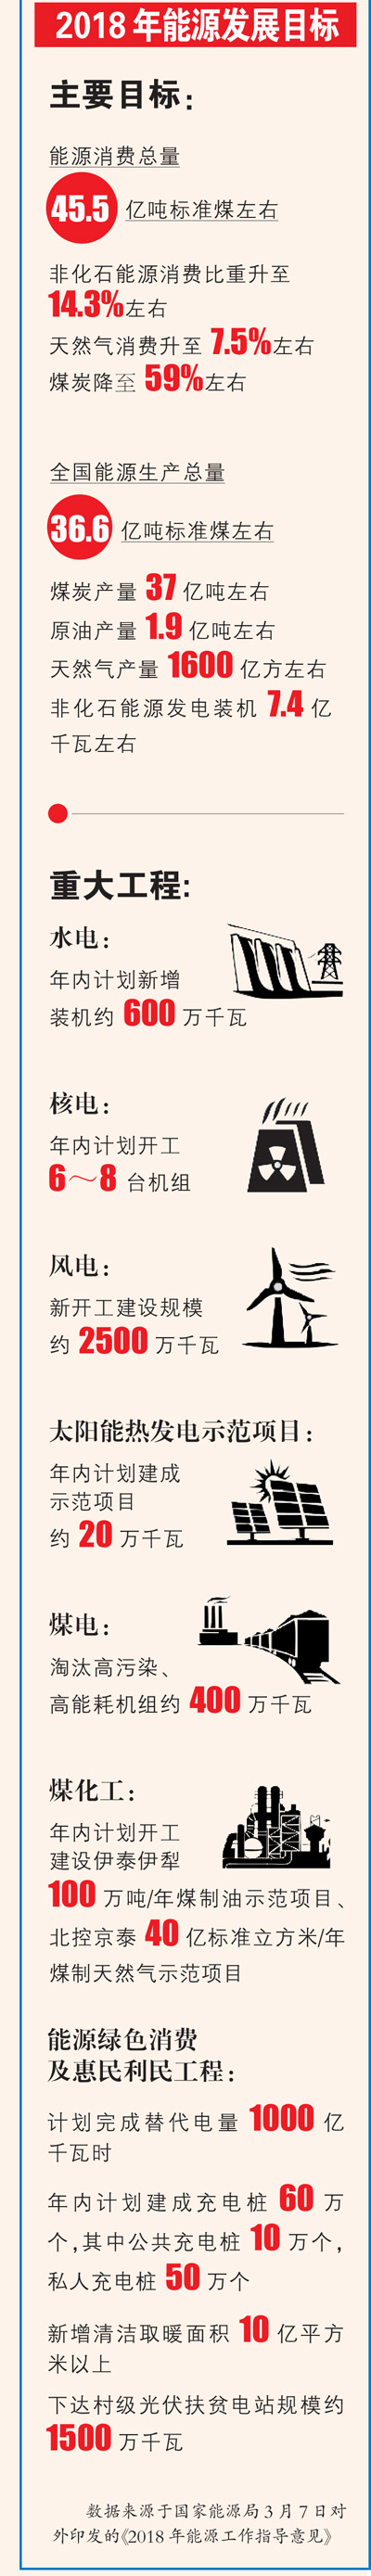 一图带你了解2018年能源发展目标：风电建设规模目标约2500万千瓦